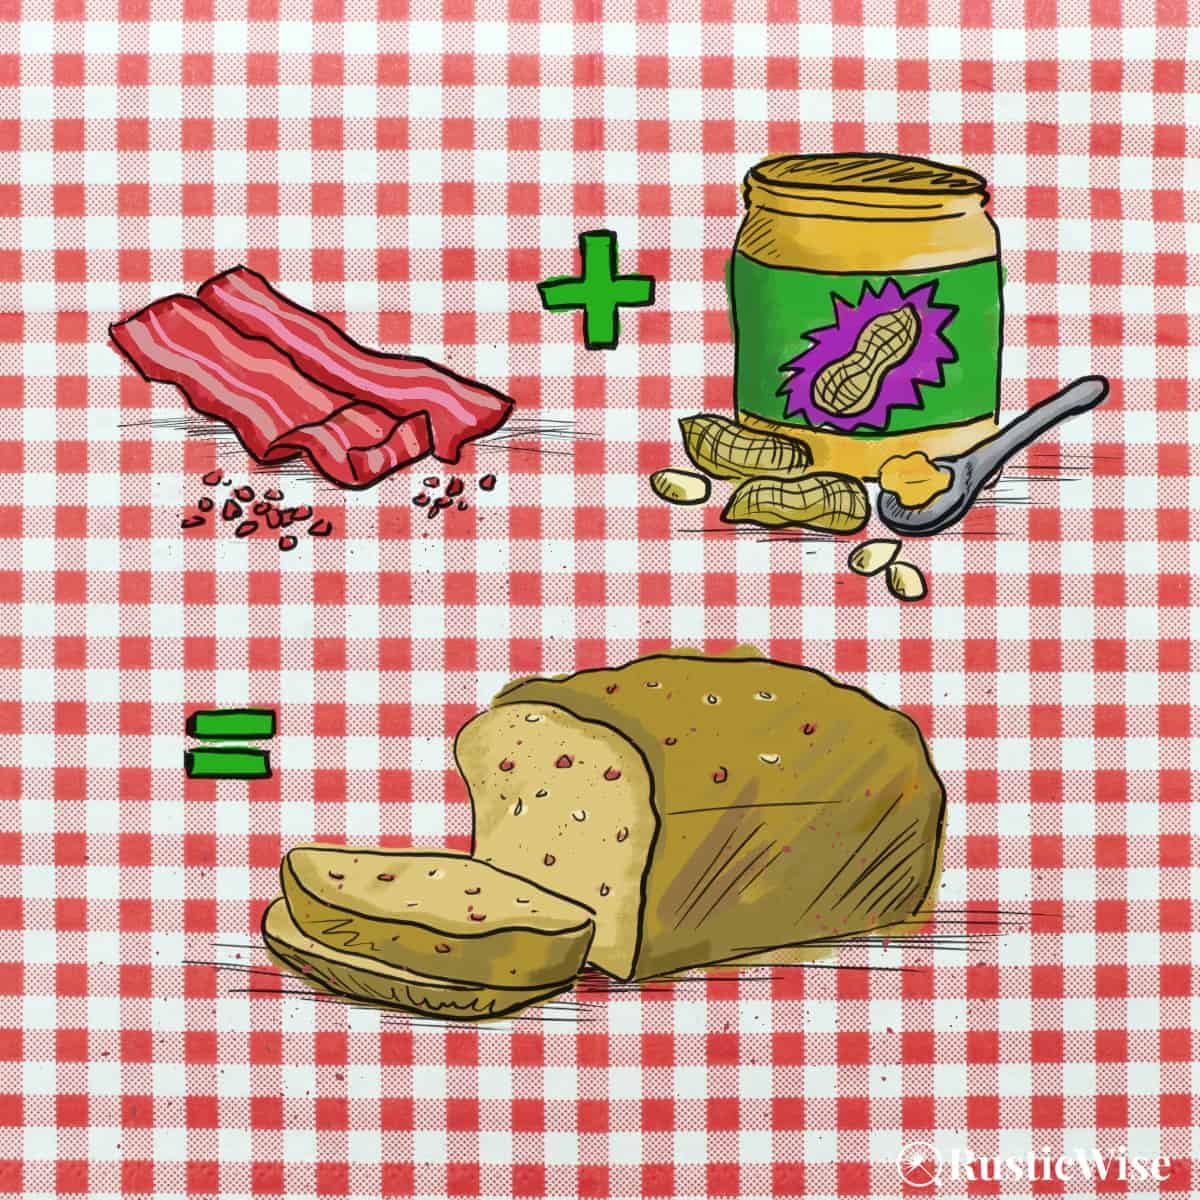 RusticWise, peanut butter bacon bread, illustration of bacon and peanut butter and loaf of bread